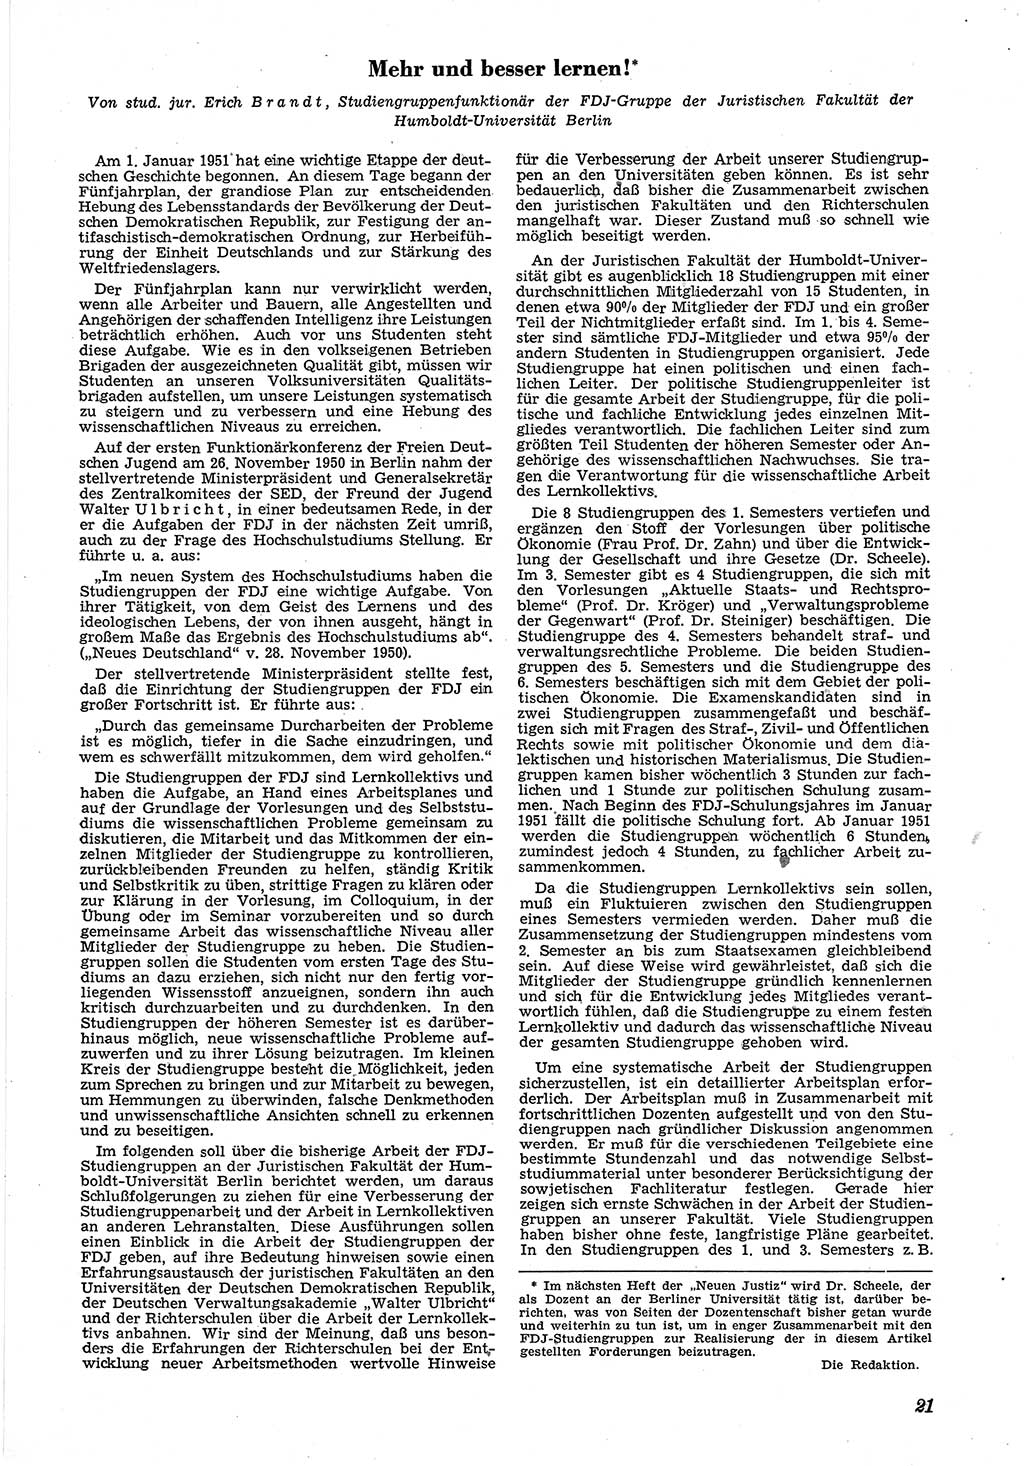 Neue Justiz (NJ), Zeitschrift für Recht und Rechtswissenschaft [Deutsche Demokratische Republik (DDR)], 5. Jahrgang 1951, Seite 21 (NJ DDR 1951, S. 21)